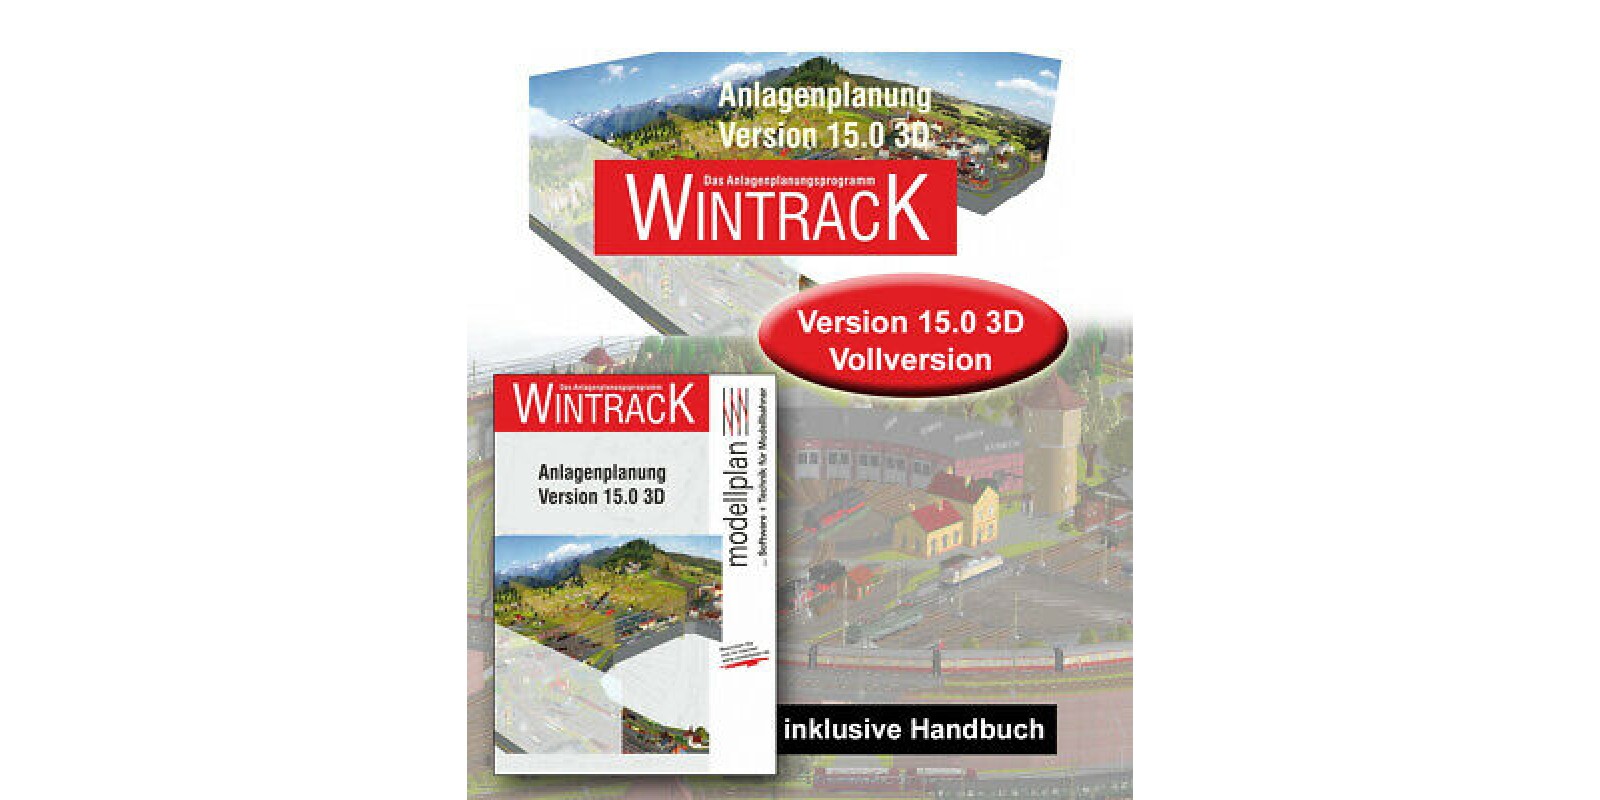 SEMWIN03 e-Seminar for practice in Wintrack 15.0